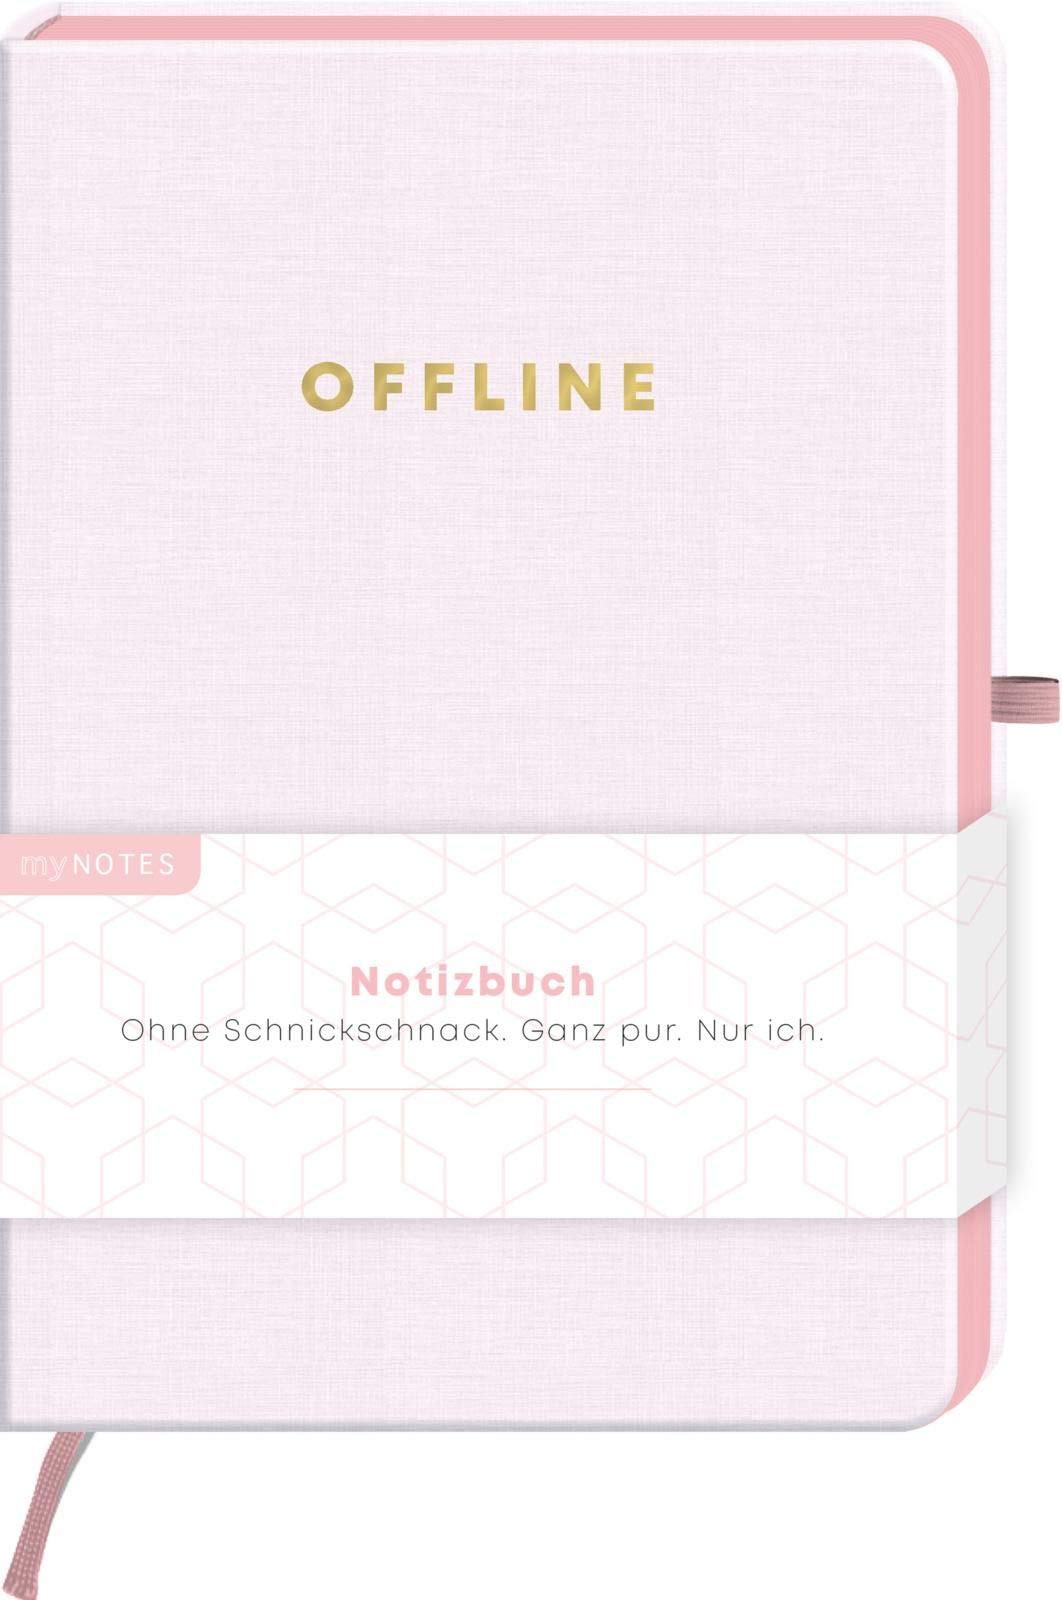 myNOTES Notizbuch Classics Offline - Notizbuch im Mediumformat für Träume, Pläne und Ideen